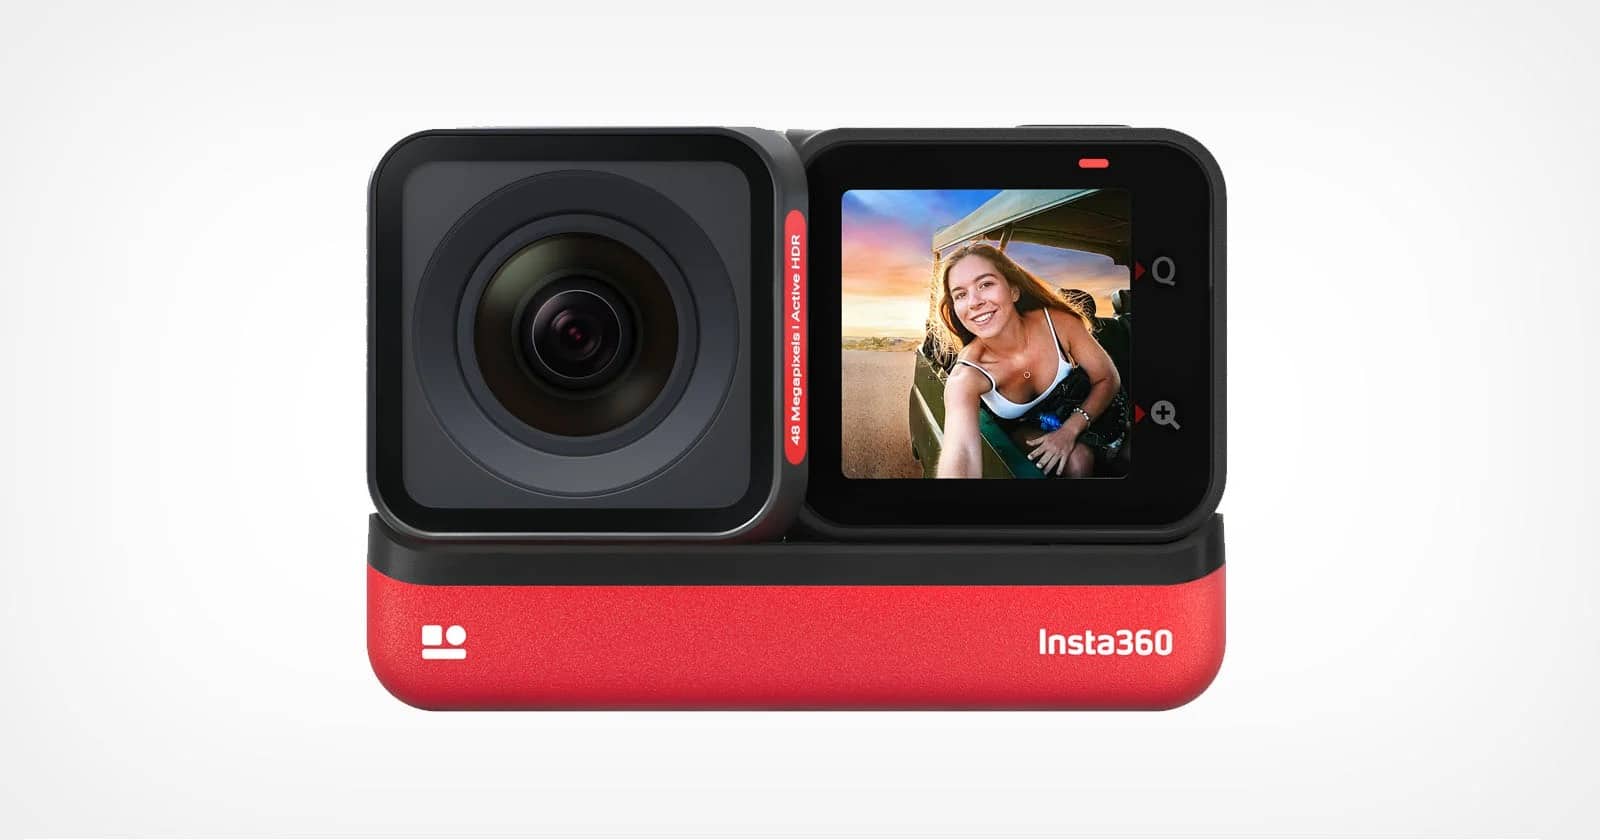 Insta360 ra mắt camera hành trình ONE RS với thiết kế module, chuyển đổi góc quay nhanh chóng và tiện lợi